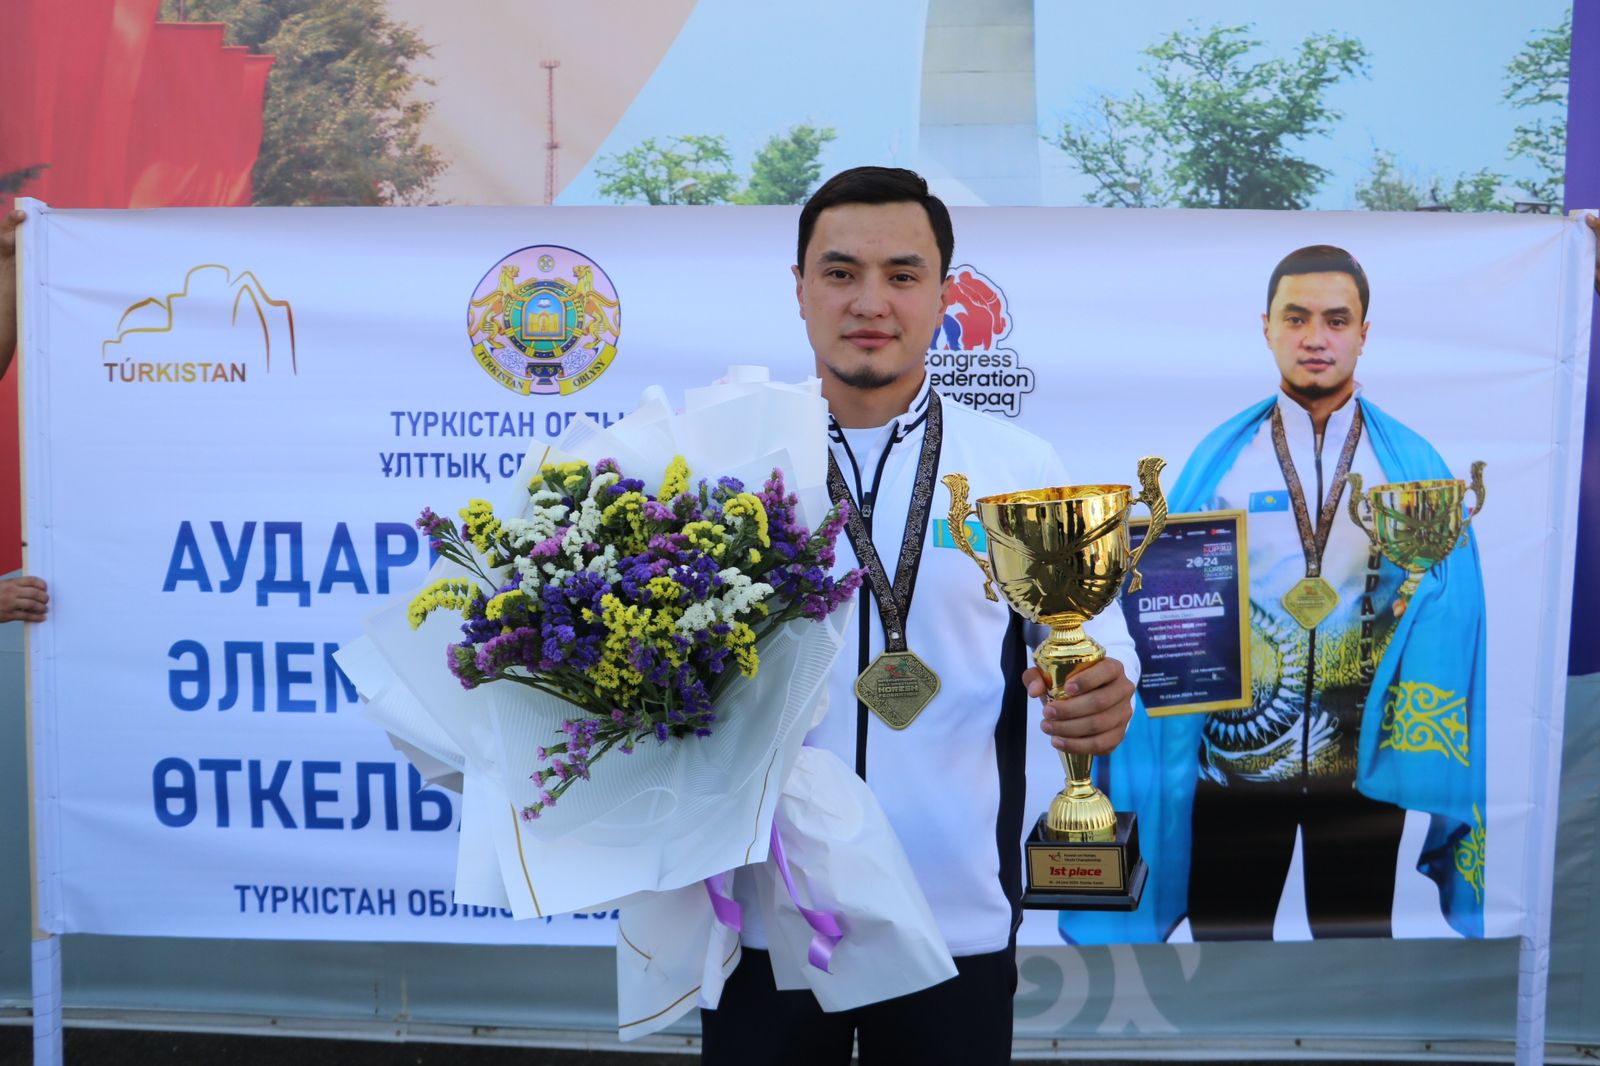 Қазан қаласында өткен додада түркістандық Дарын Өткелбай әлем чемпионы атанды